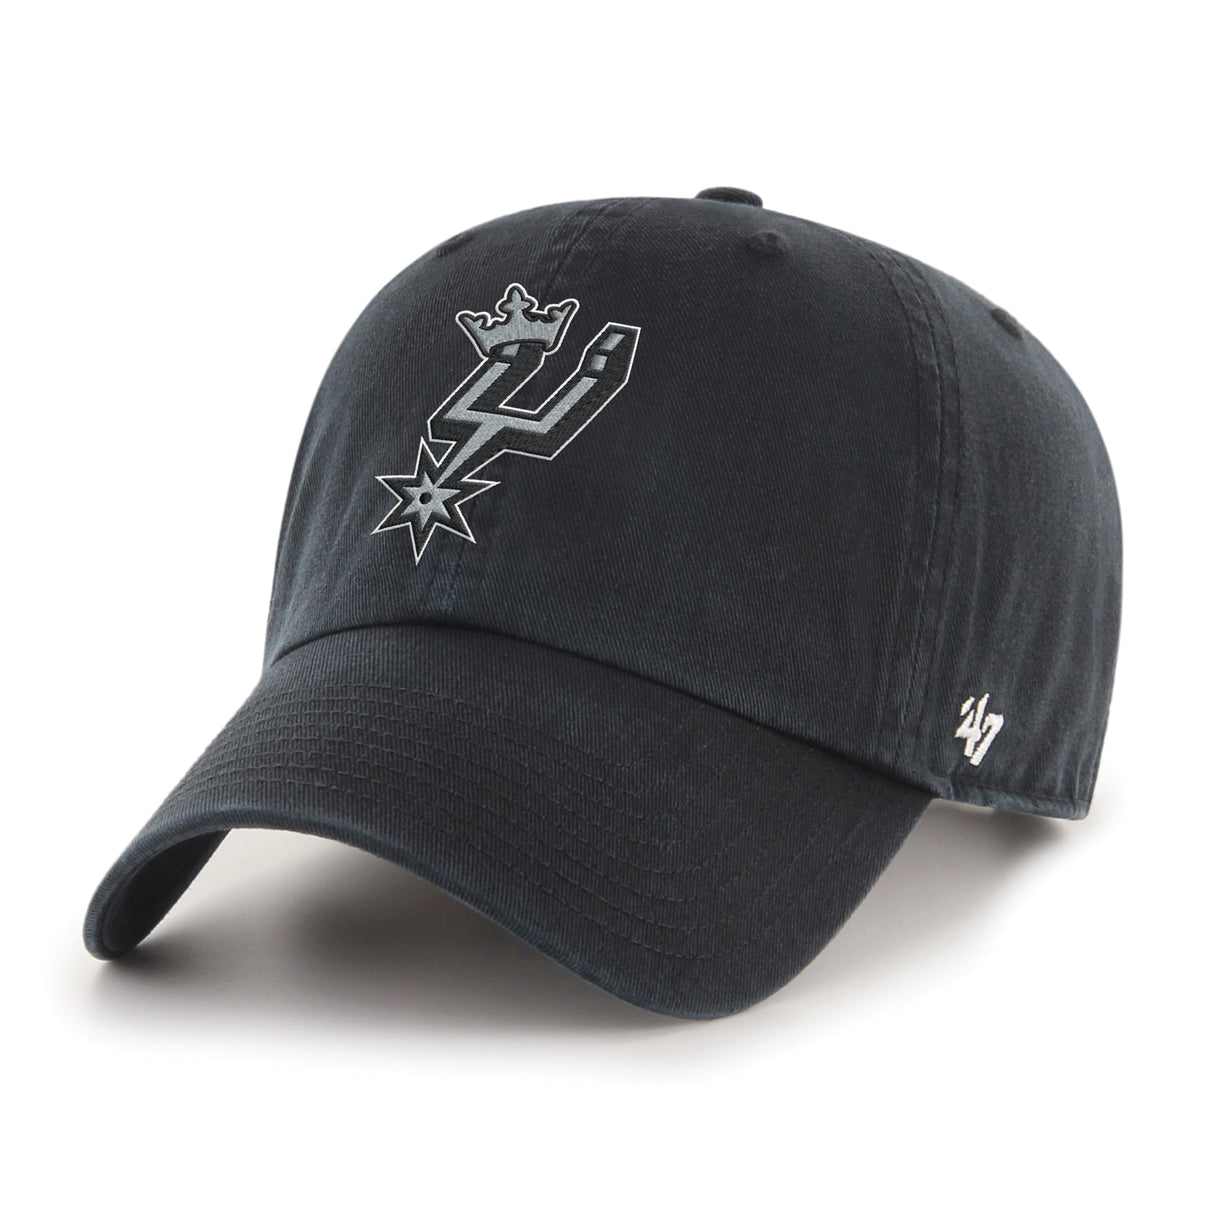 San Antonio Spurs '47 Clean Up Hat